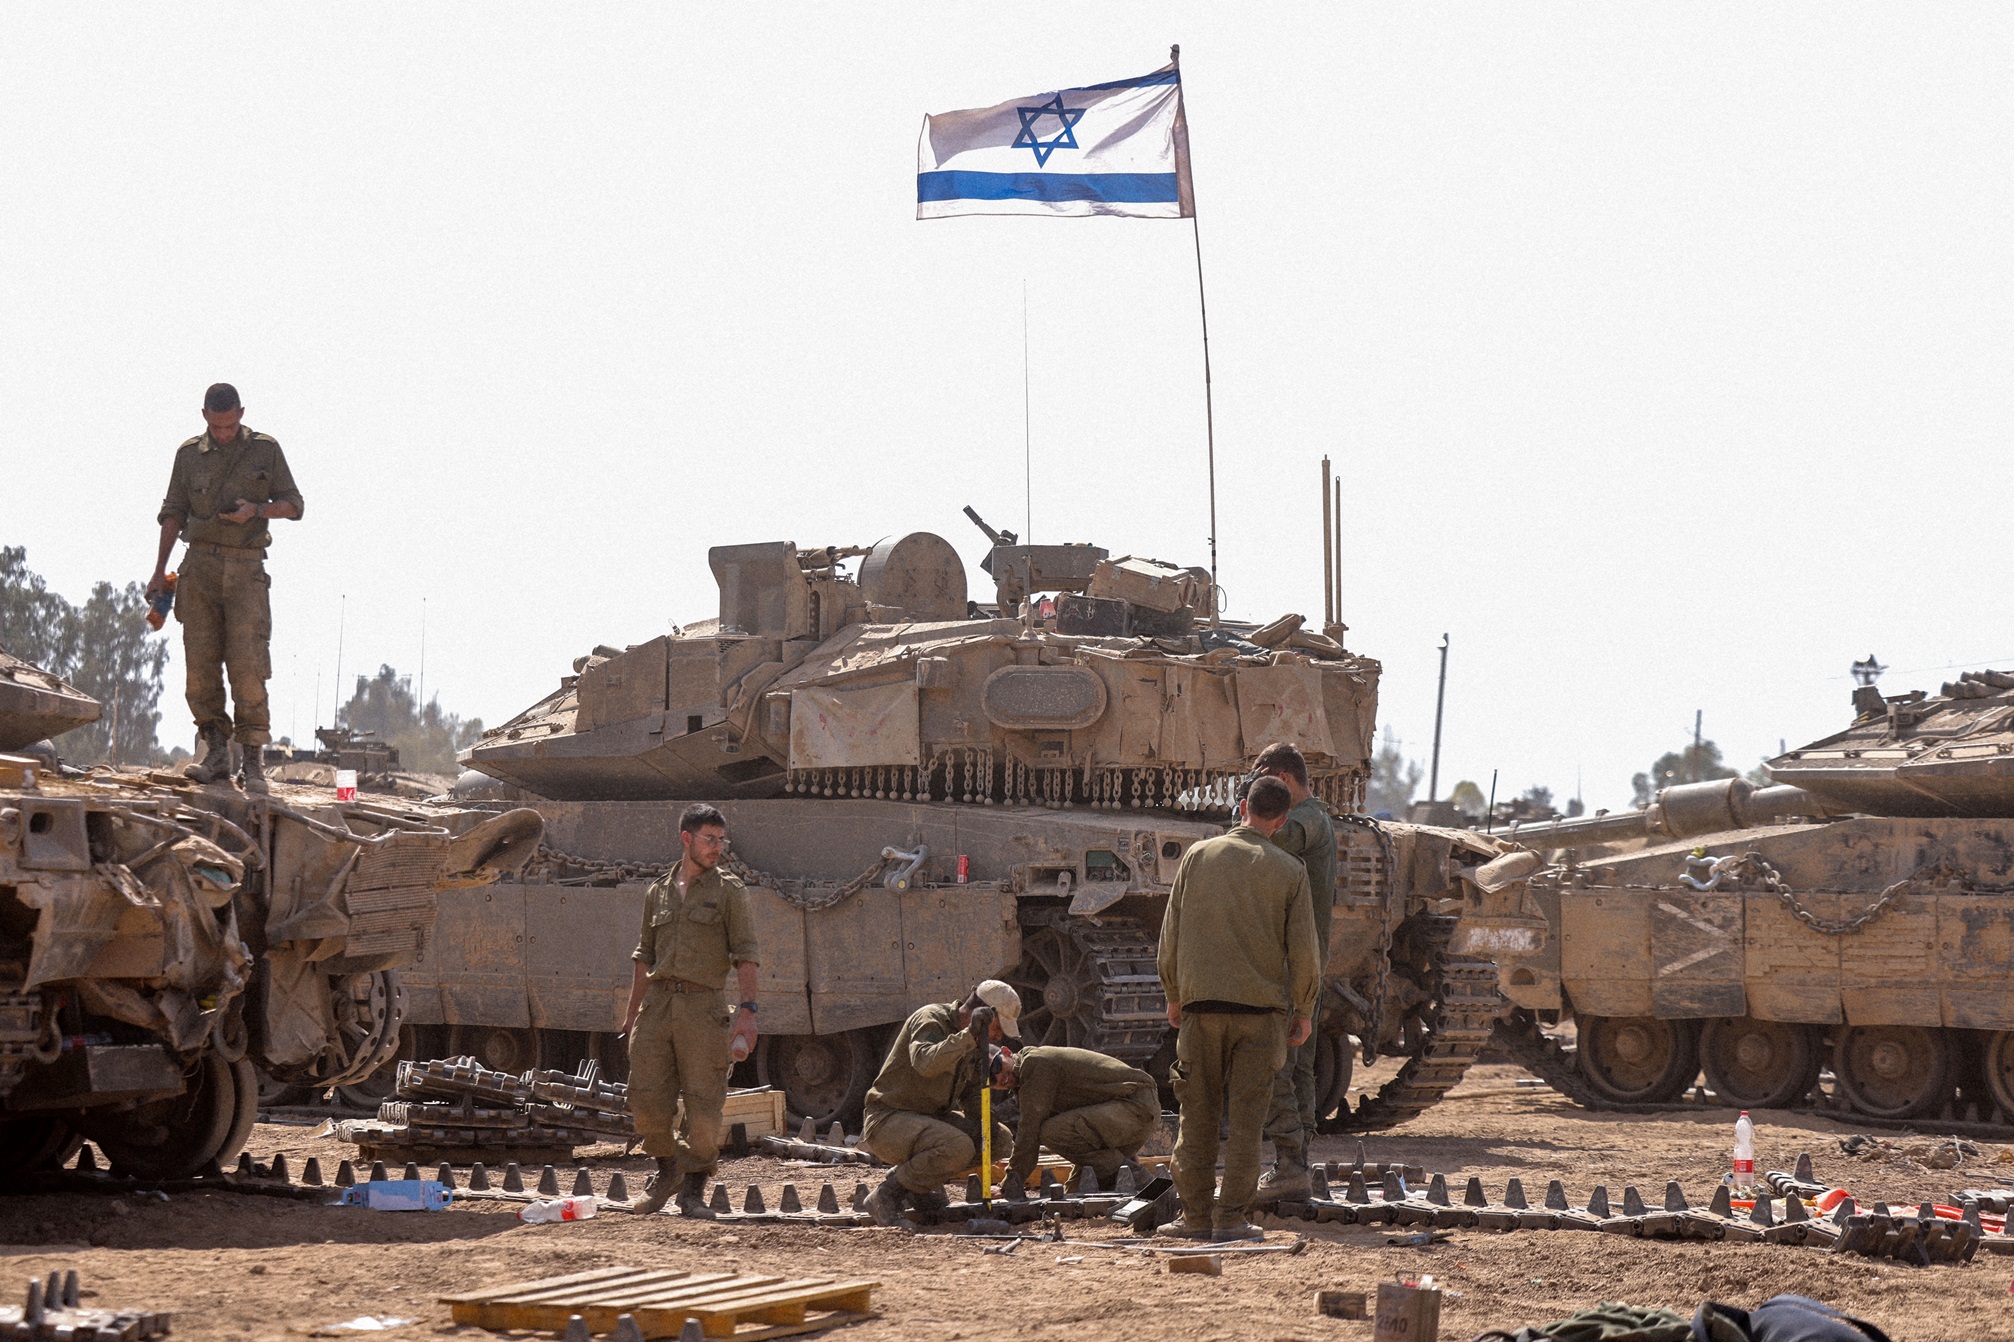 يقول شينكر إن الإسرائيليين استفادوا من الوقت بعد حرب يوليو عام 2006 مع "حزب الله (ا ف ب)